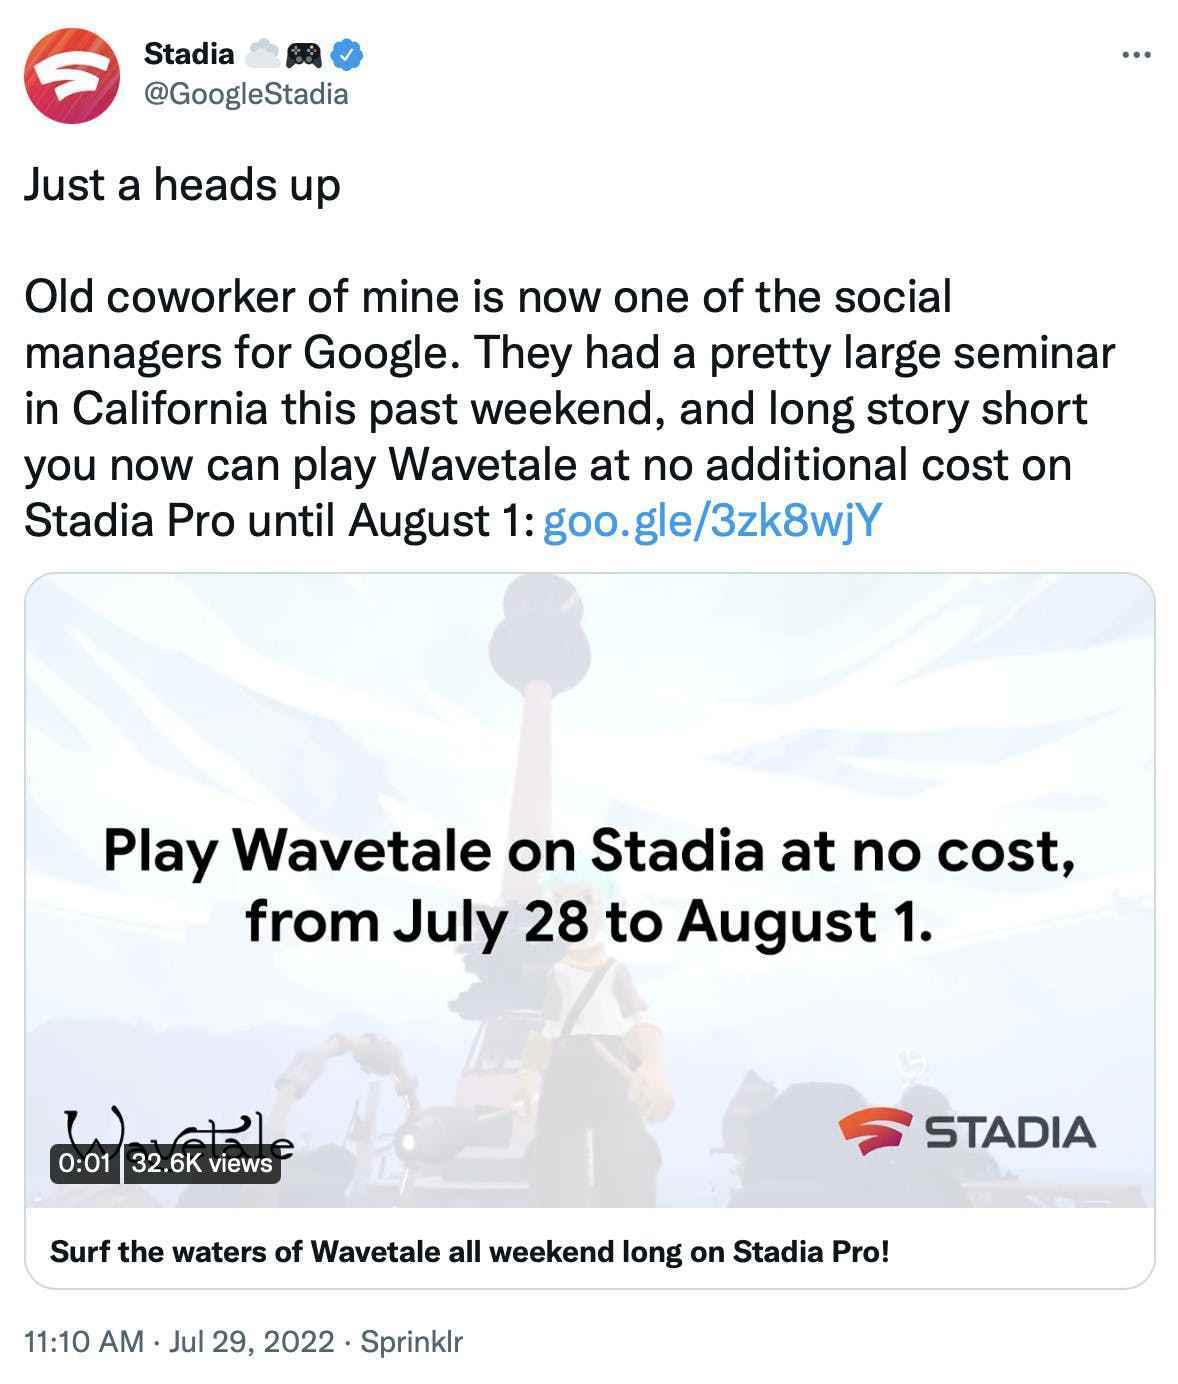 Google Stadia'dan bir tweet'in resmi, okuma: Sadece bir uyarı Eski iş arkadaşım artık Google'ın sosyal yöneticilerinden biri.  Geçtiğimiz hafta sonu Kaliforniya'da oldukça büyük bir seminer verdiler ve uzun lafın kısası, 1 Ağustos'a kadar Stadia Pro'da ek ücret ödemeden Wavetale oynayabilirsiniz.